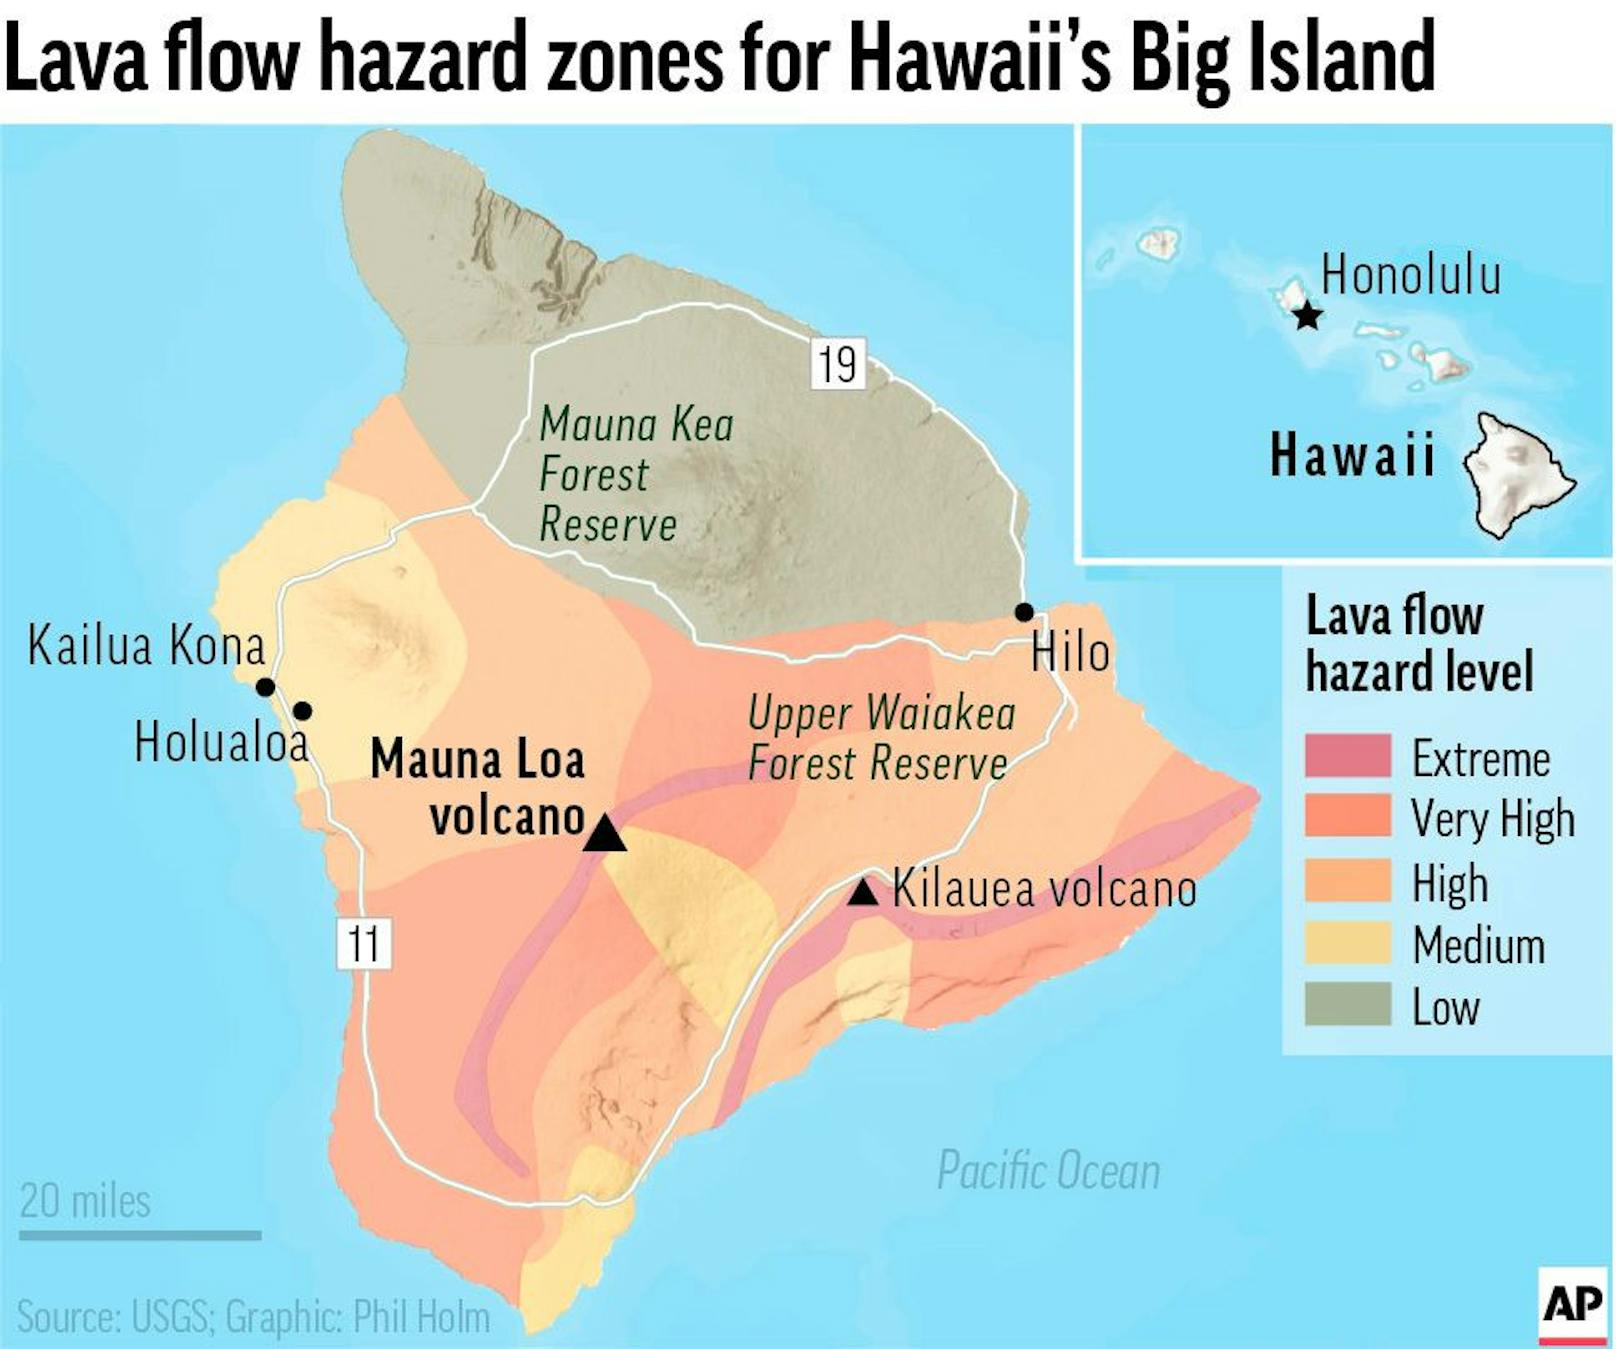 Der Boden am Mauna Loa, dem größten aktiven Vulkan der Welt, bebt und schwillt an, was darauf hindeutet, dass er ausbrechen wird. Die Behörden von Hawaii raten den Bewohnern, sich auf einen möglichen Ausbruch vorzubereiten. Diese Karte zeigt die Gefahrenzonen für Lavaströme auf der Insel.